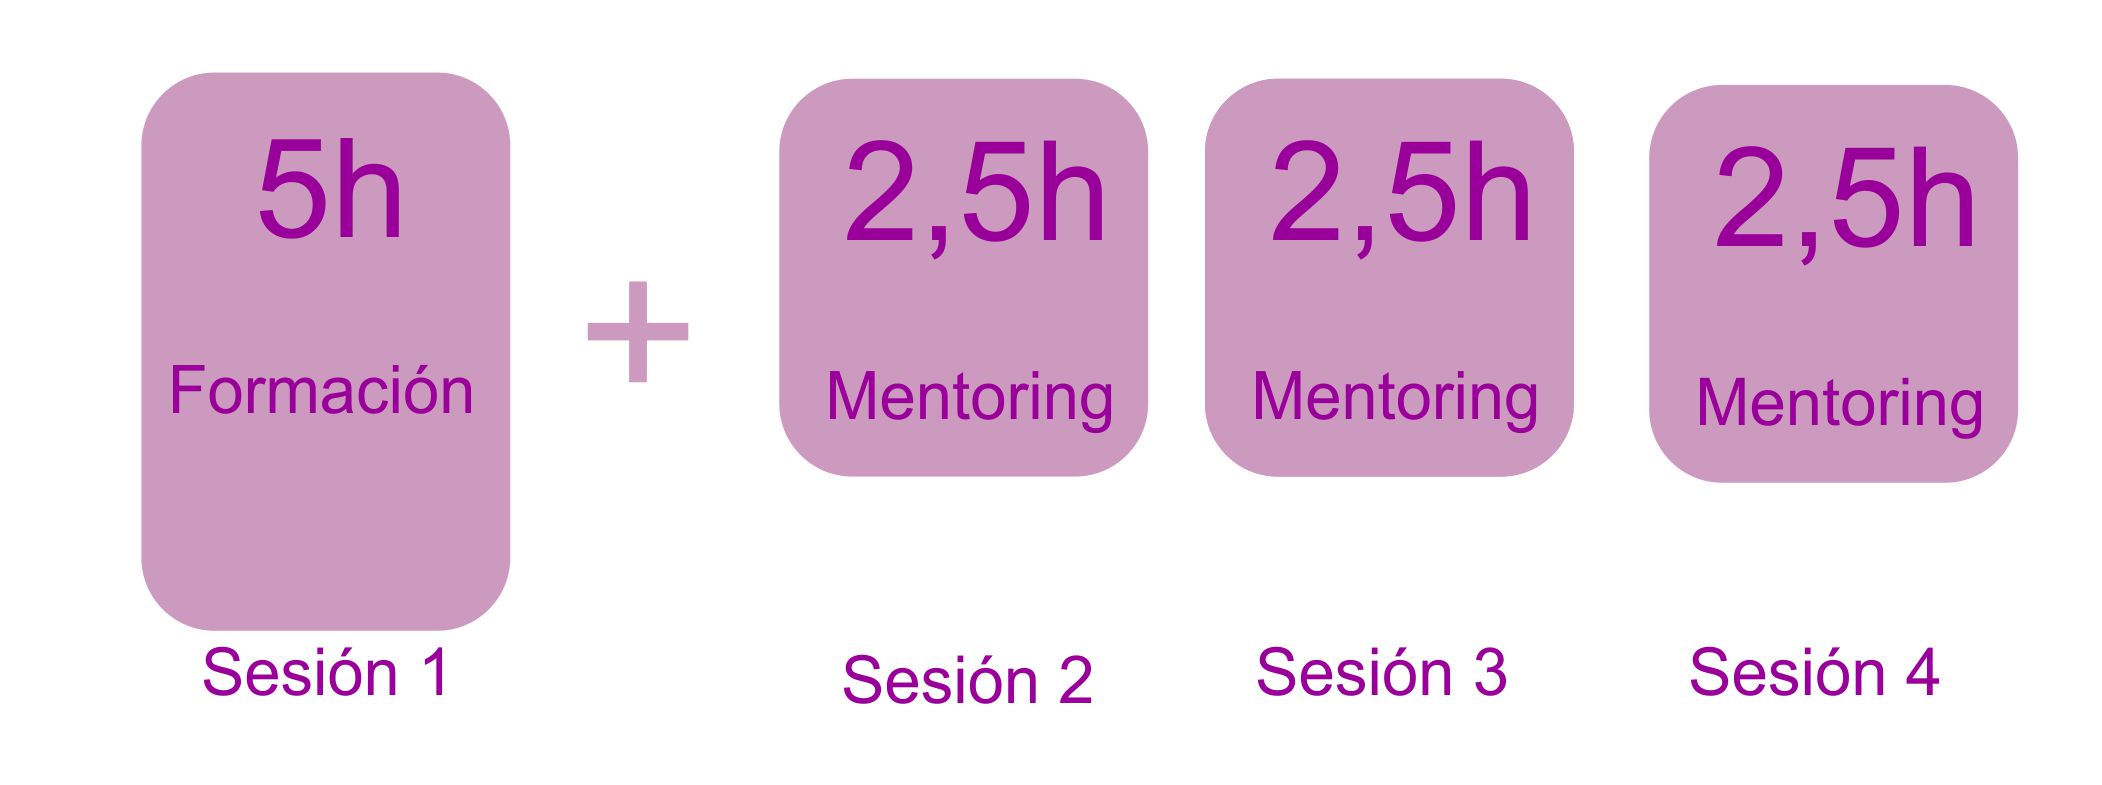 1 sesión formación+ 3 mentorización